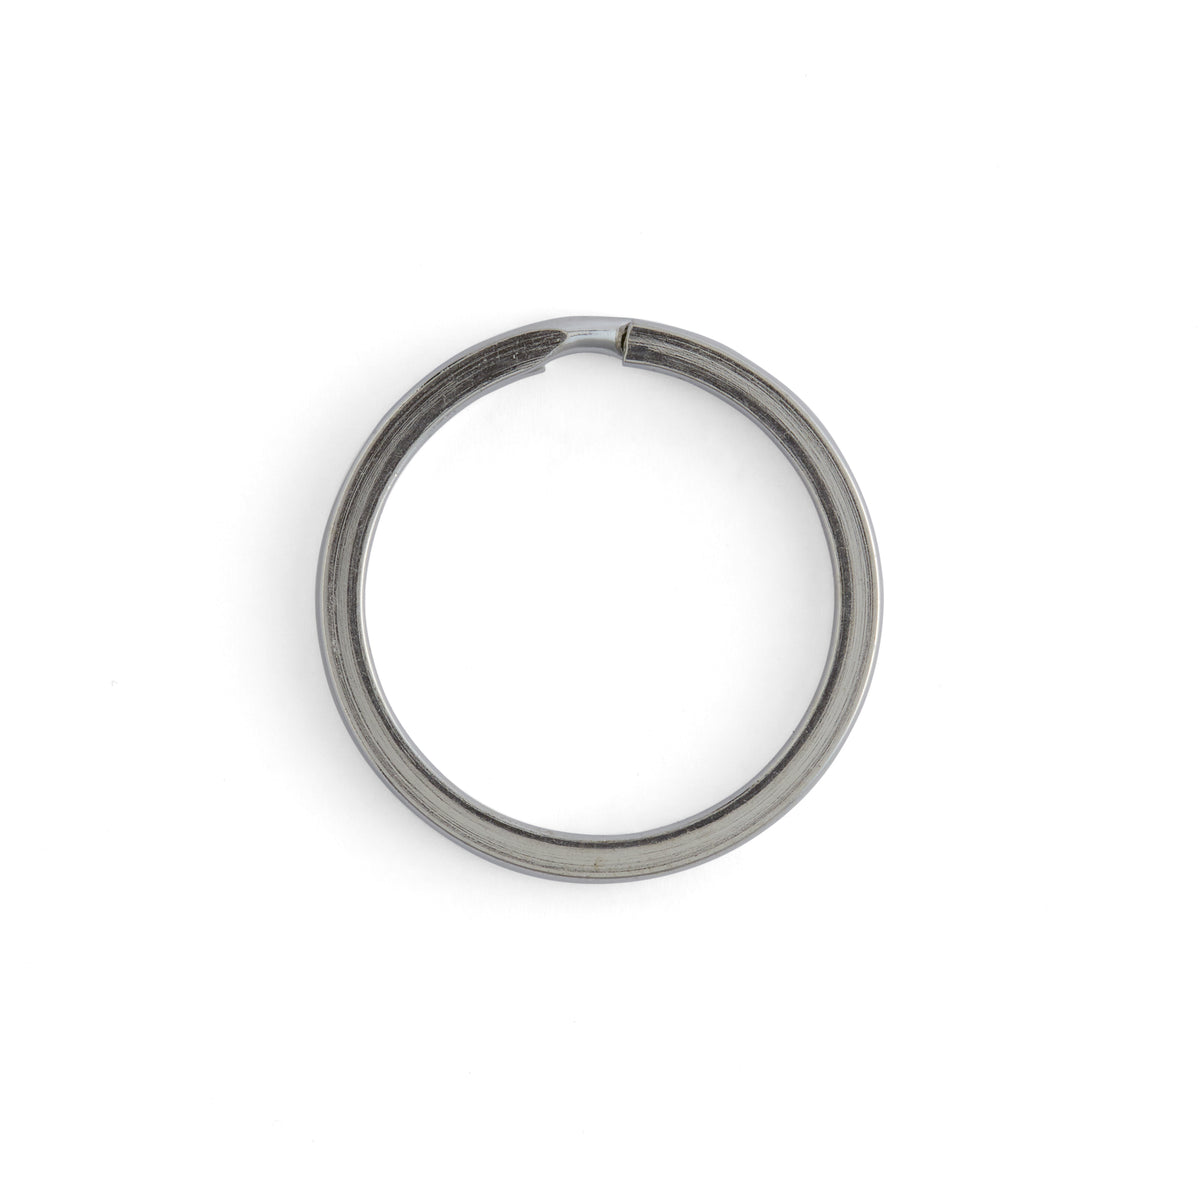 Wholesale 100 Pcs Flat Split Keychain Ring Key Rings Findings 20mm | eBay